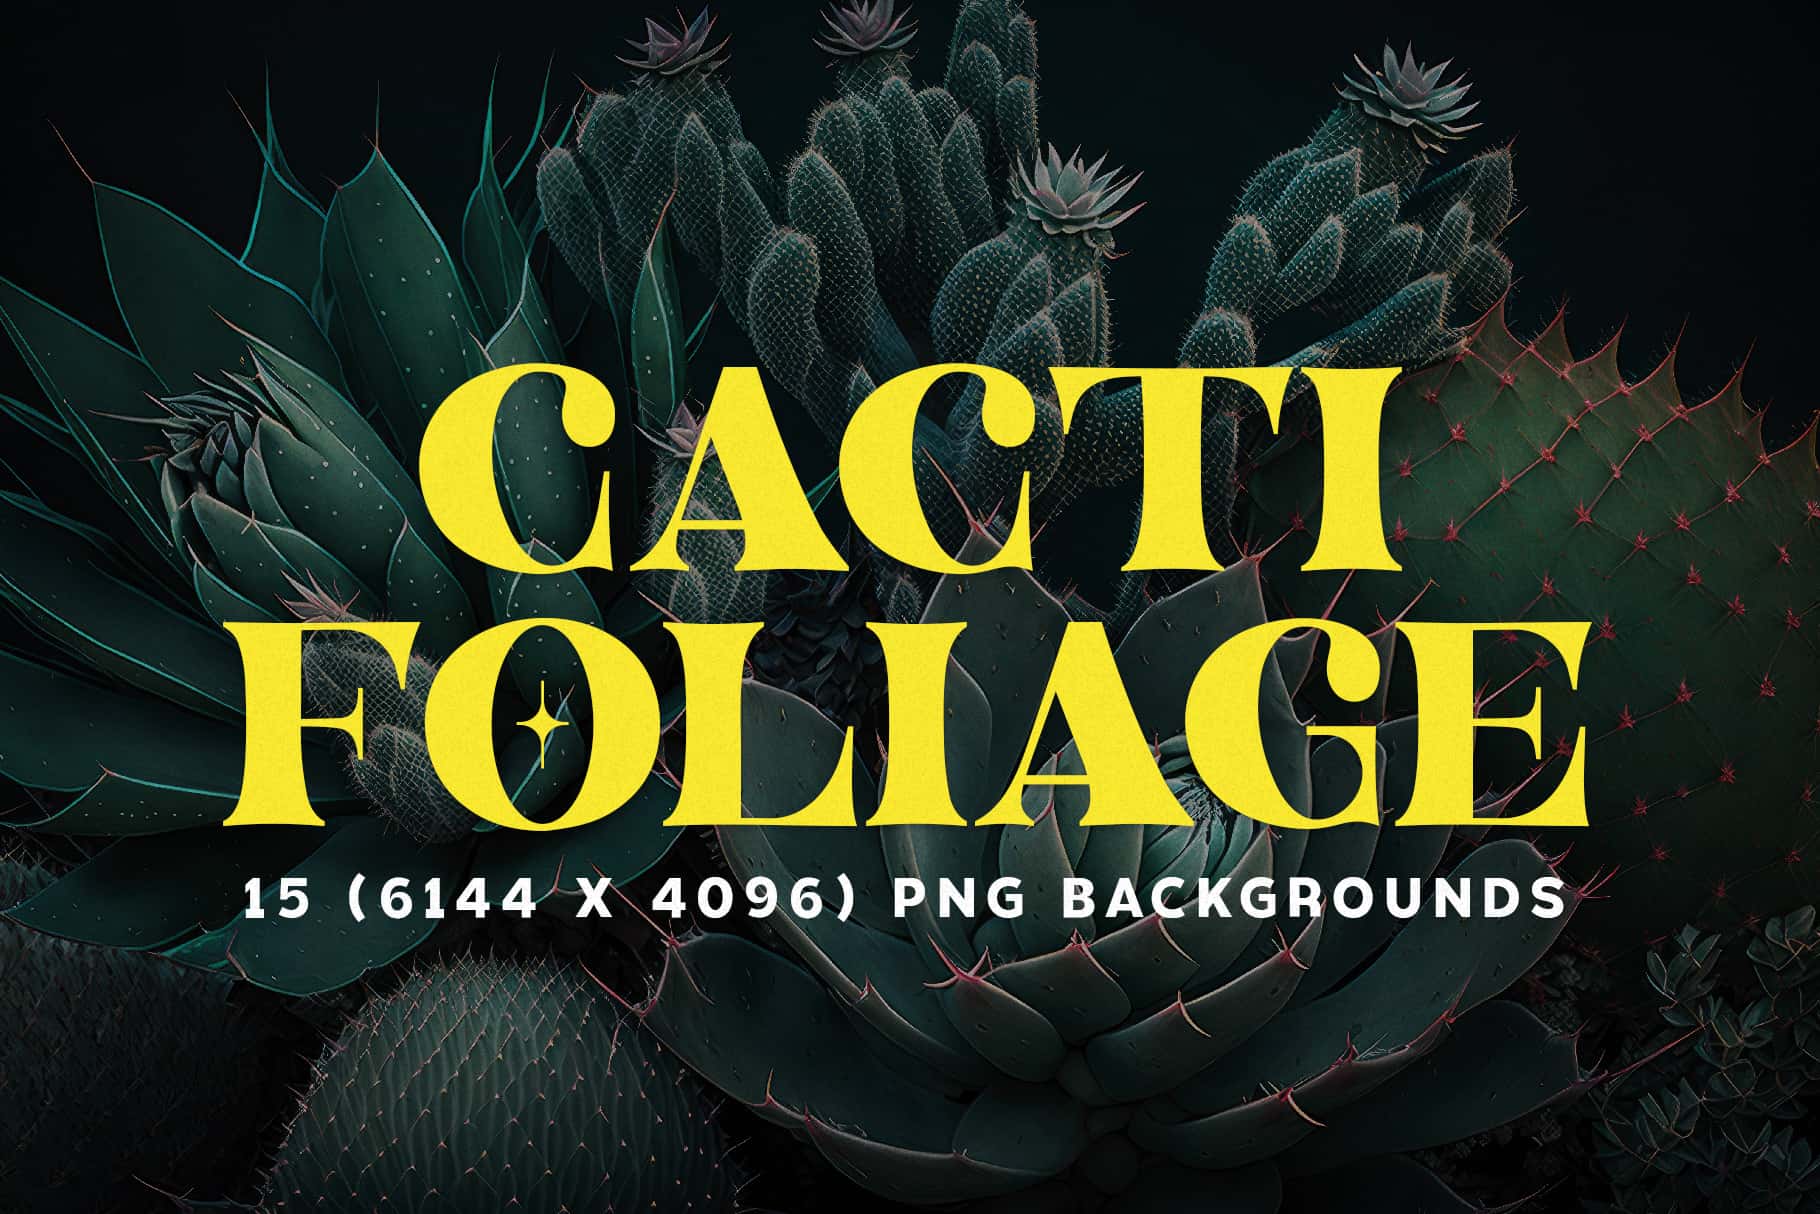 Cacti Foliage Cover